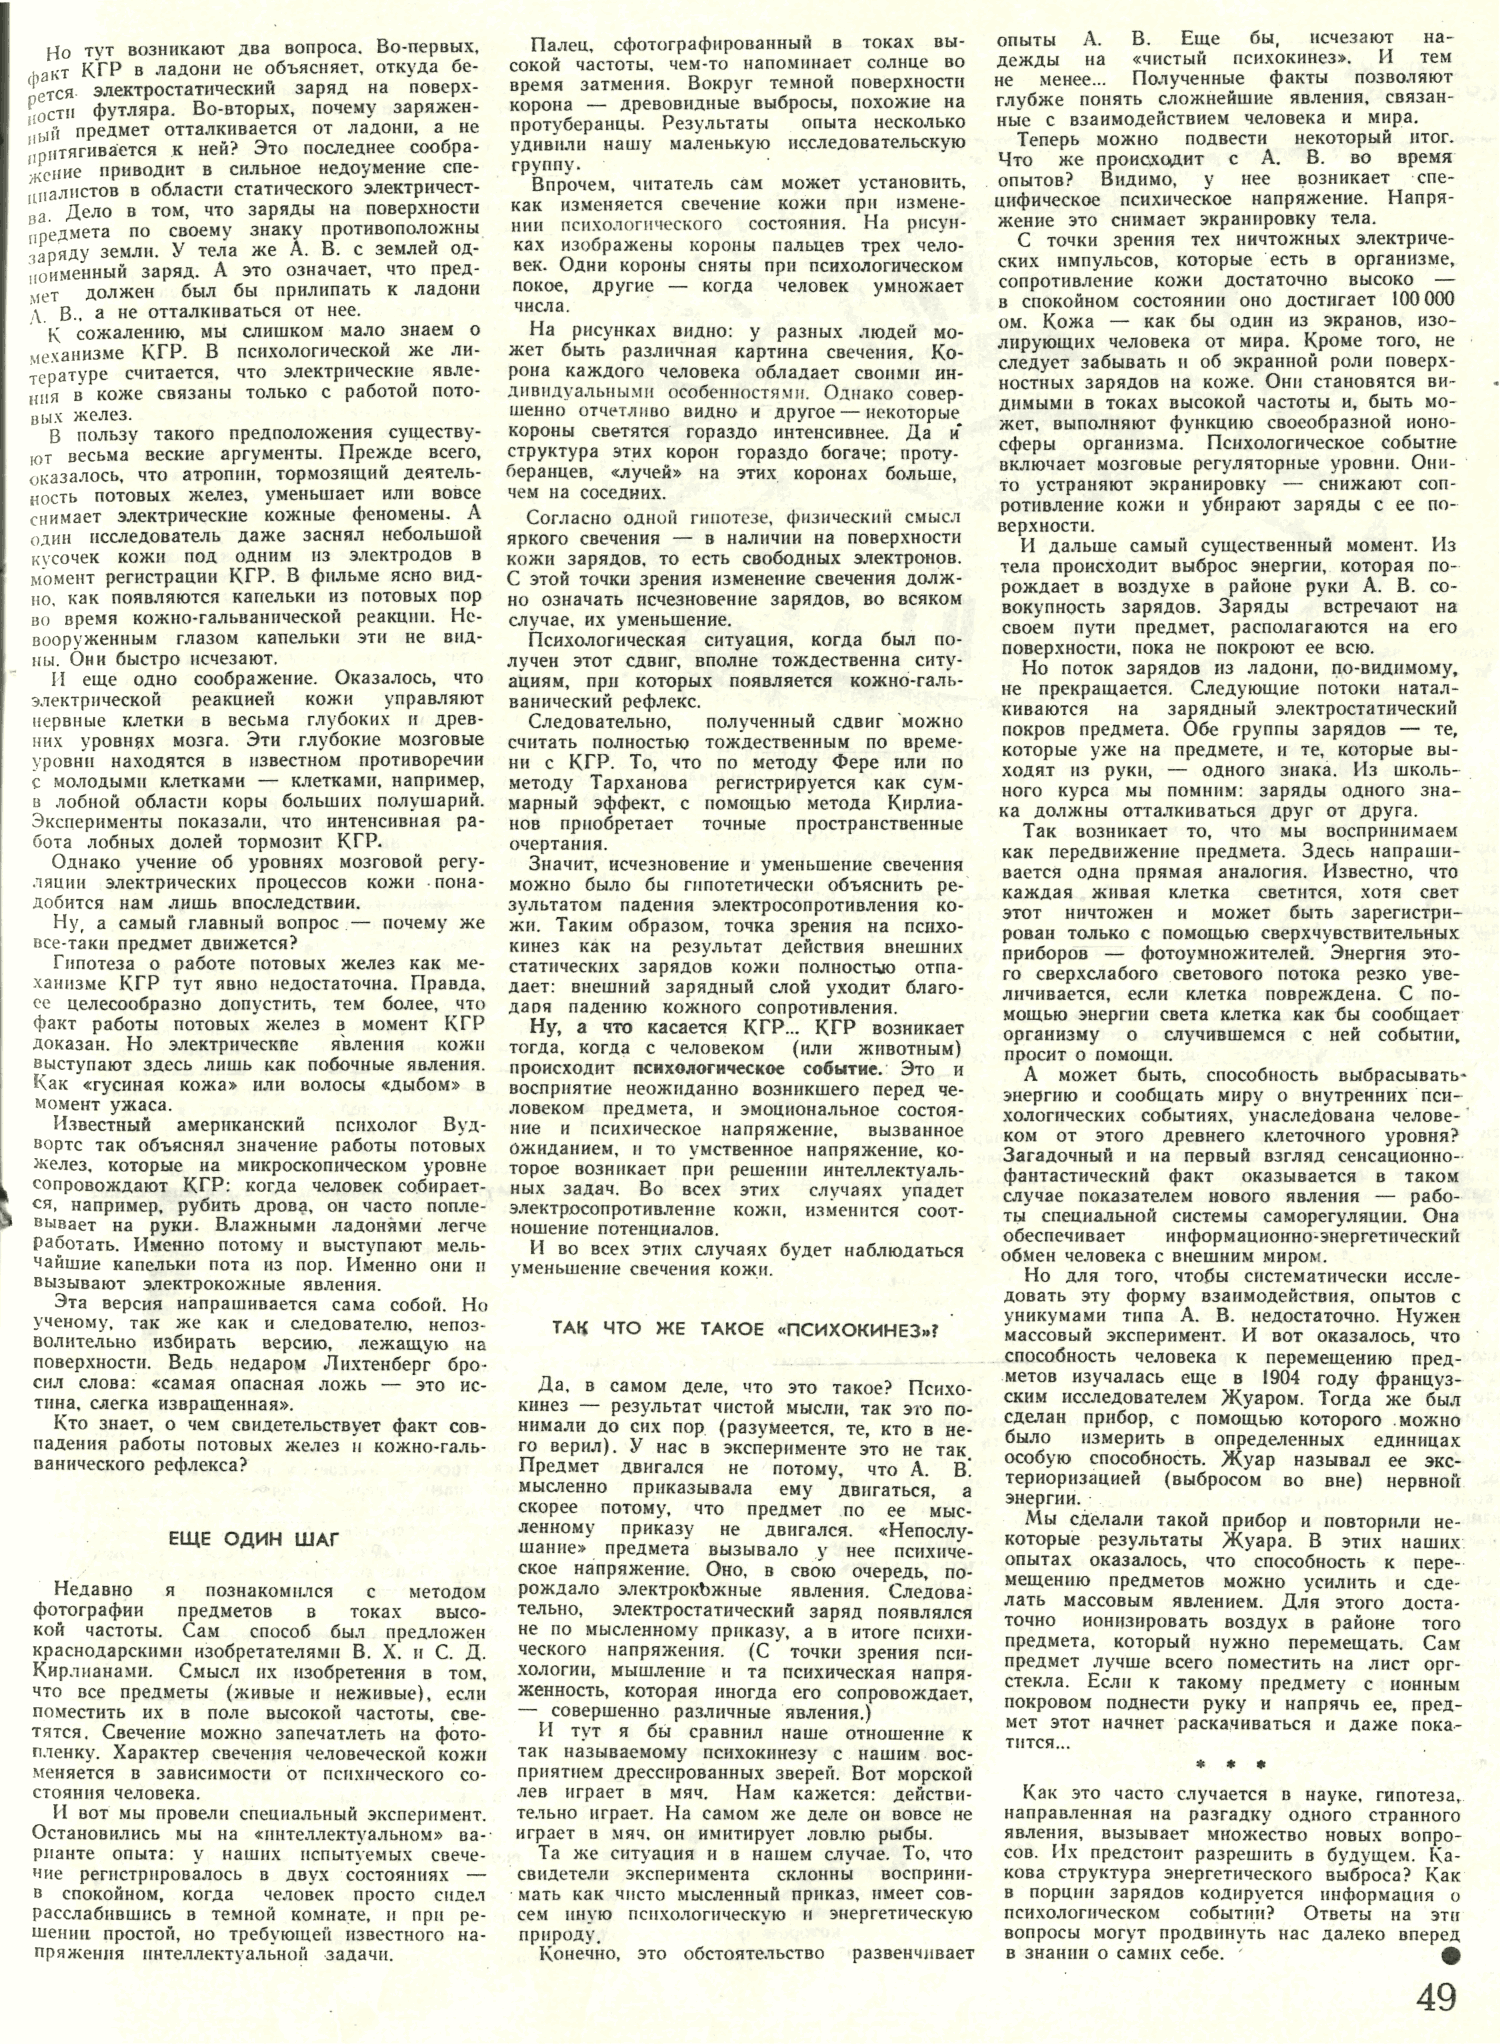 Психокинез: факт или фантазия? В. Пушкин. Знание — сила, 1972, №10, с.47-49. Фотокопия №3